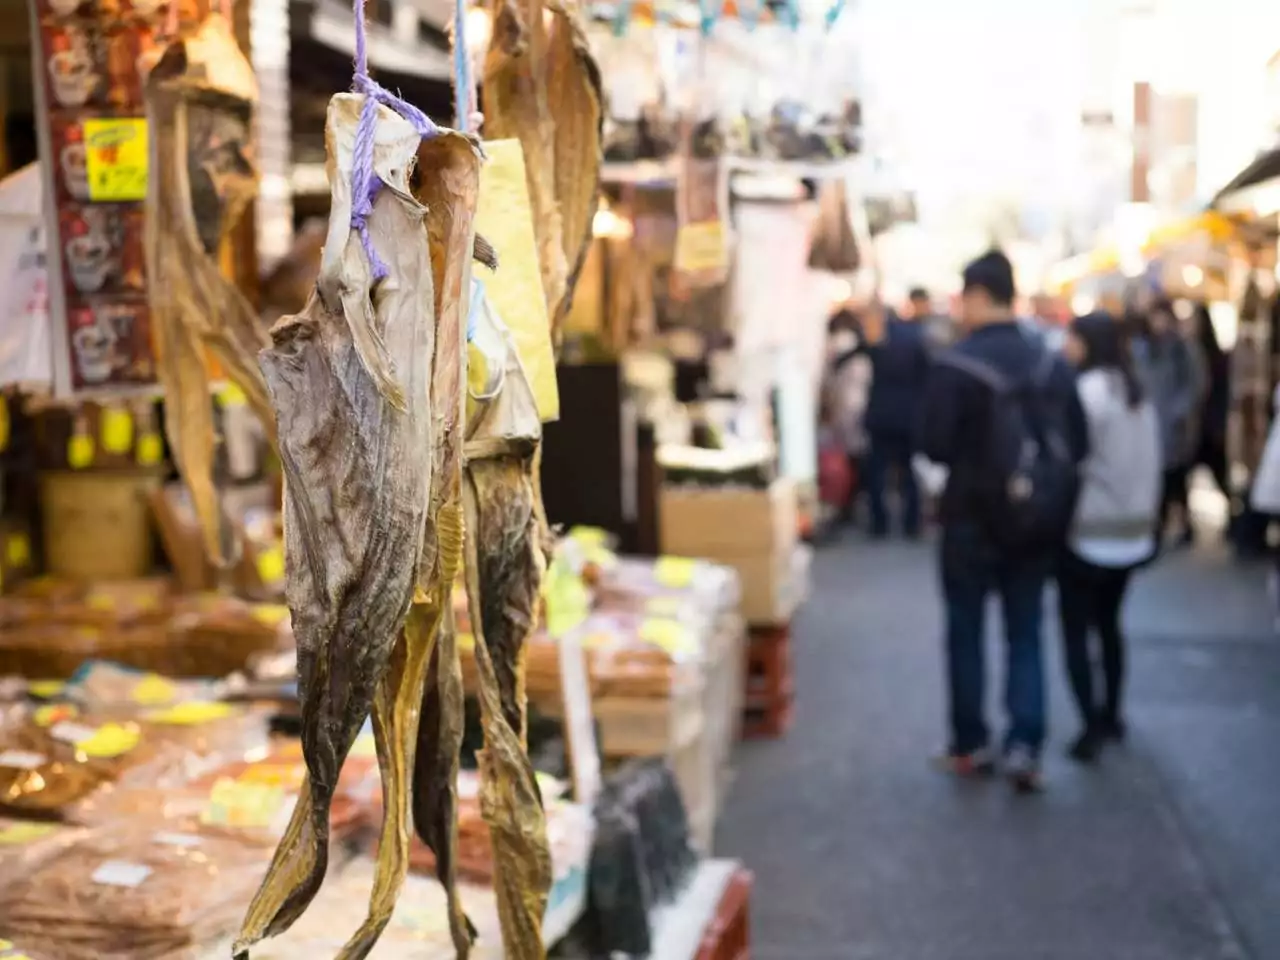 Conheça os melhores lugares para visitar no japão - detalhe de peixe seco pendurado no mercado Tsukiji no Japão e turistas ao fundo